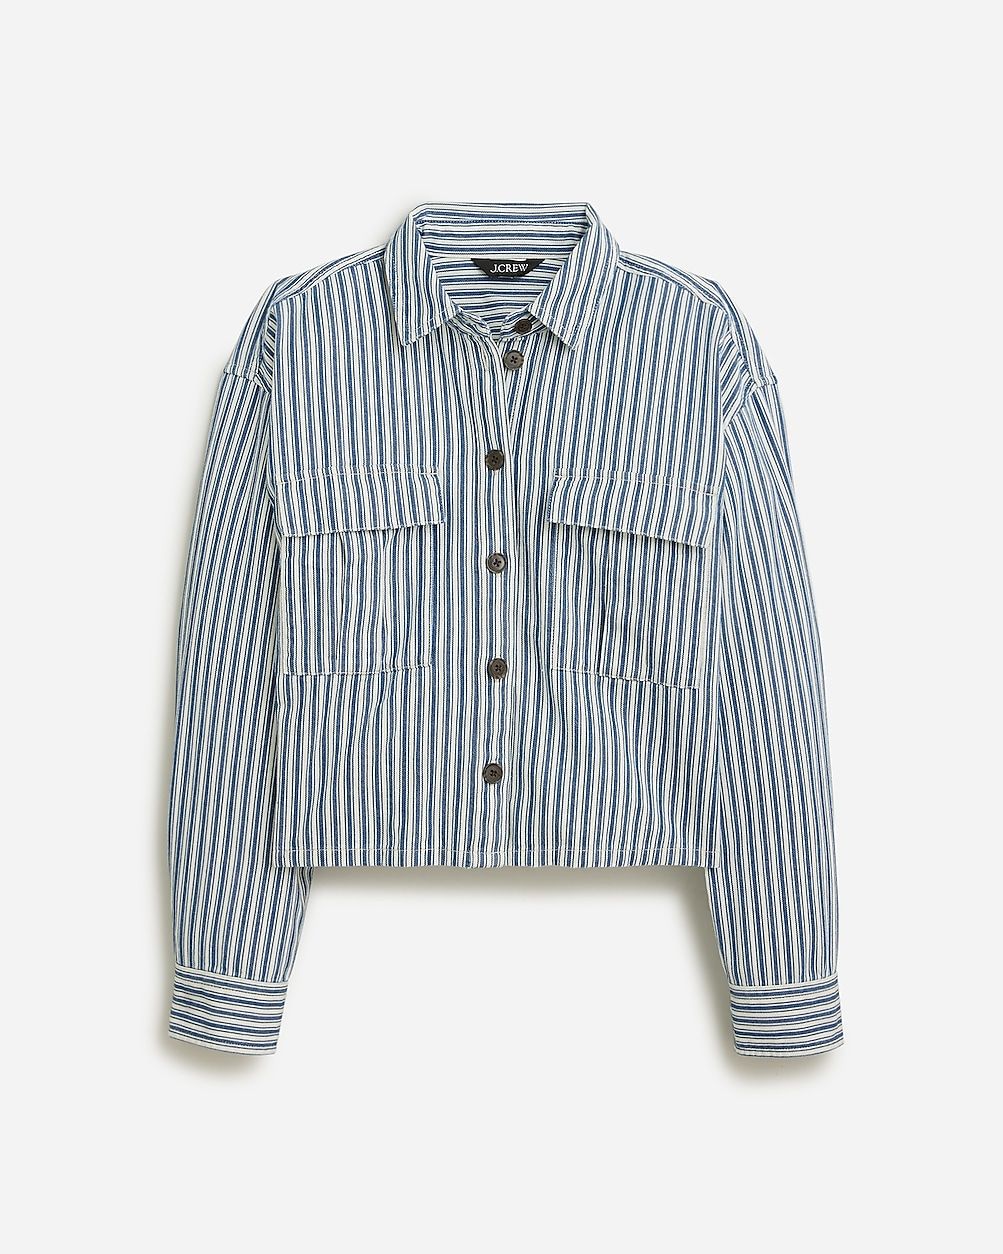 Cargo button-up shirt in stripe | J.Crew US